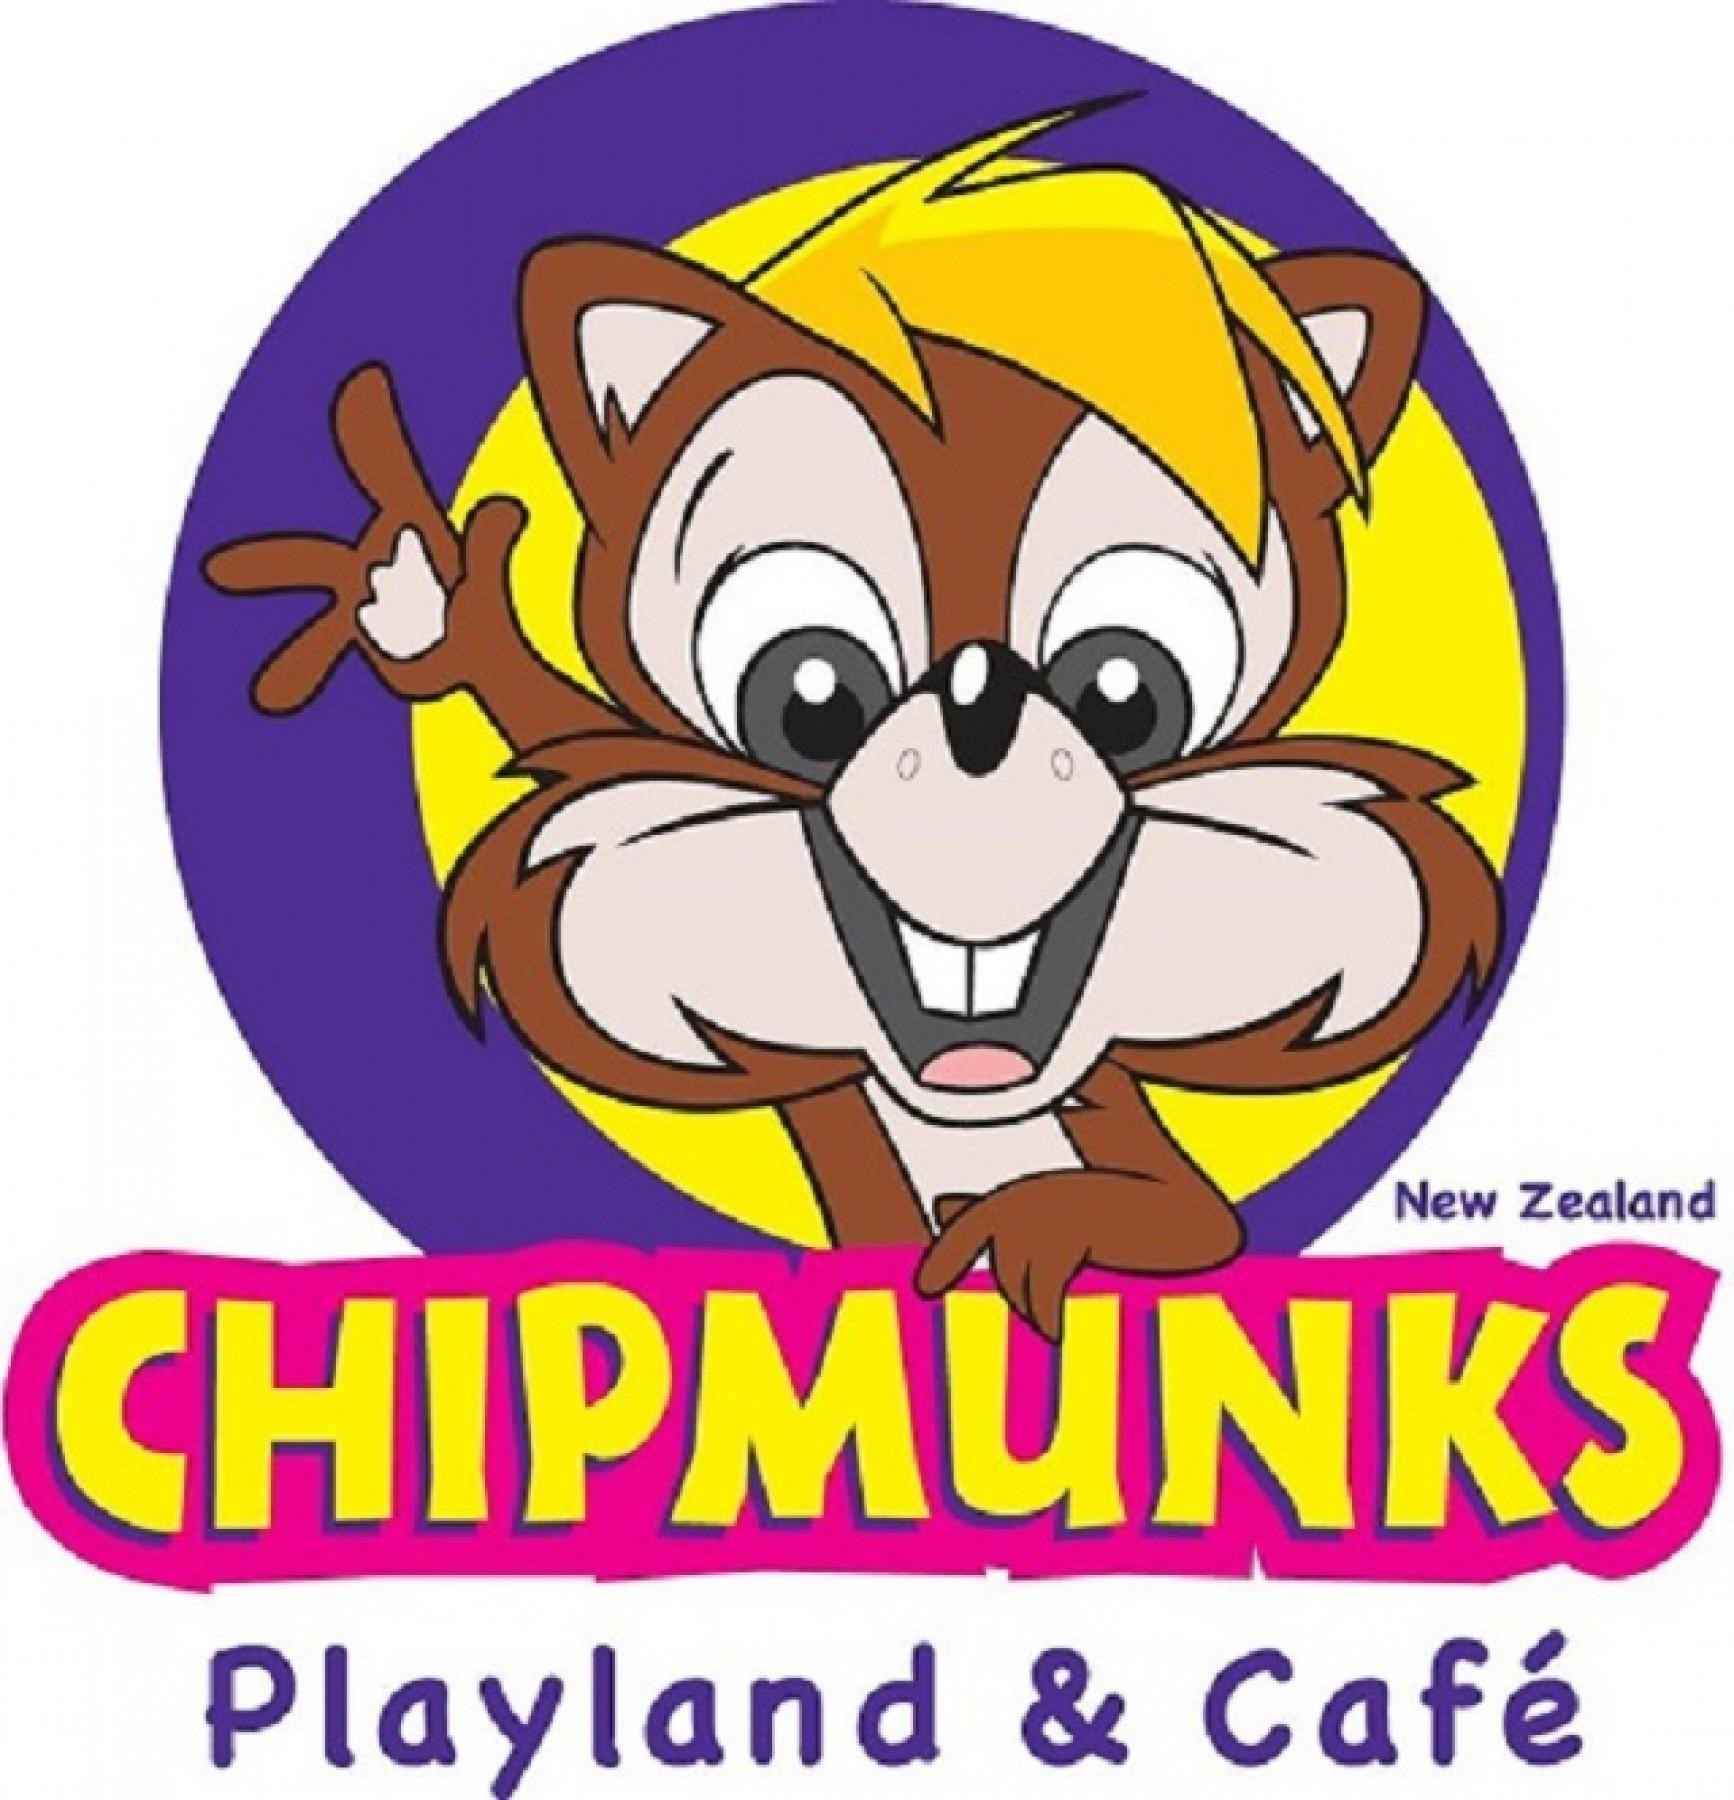 Established Children's Playland & Café Franchise  Chipmunks ...